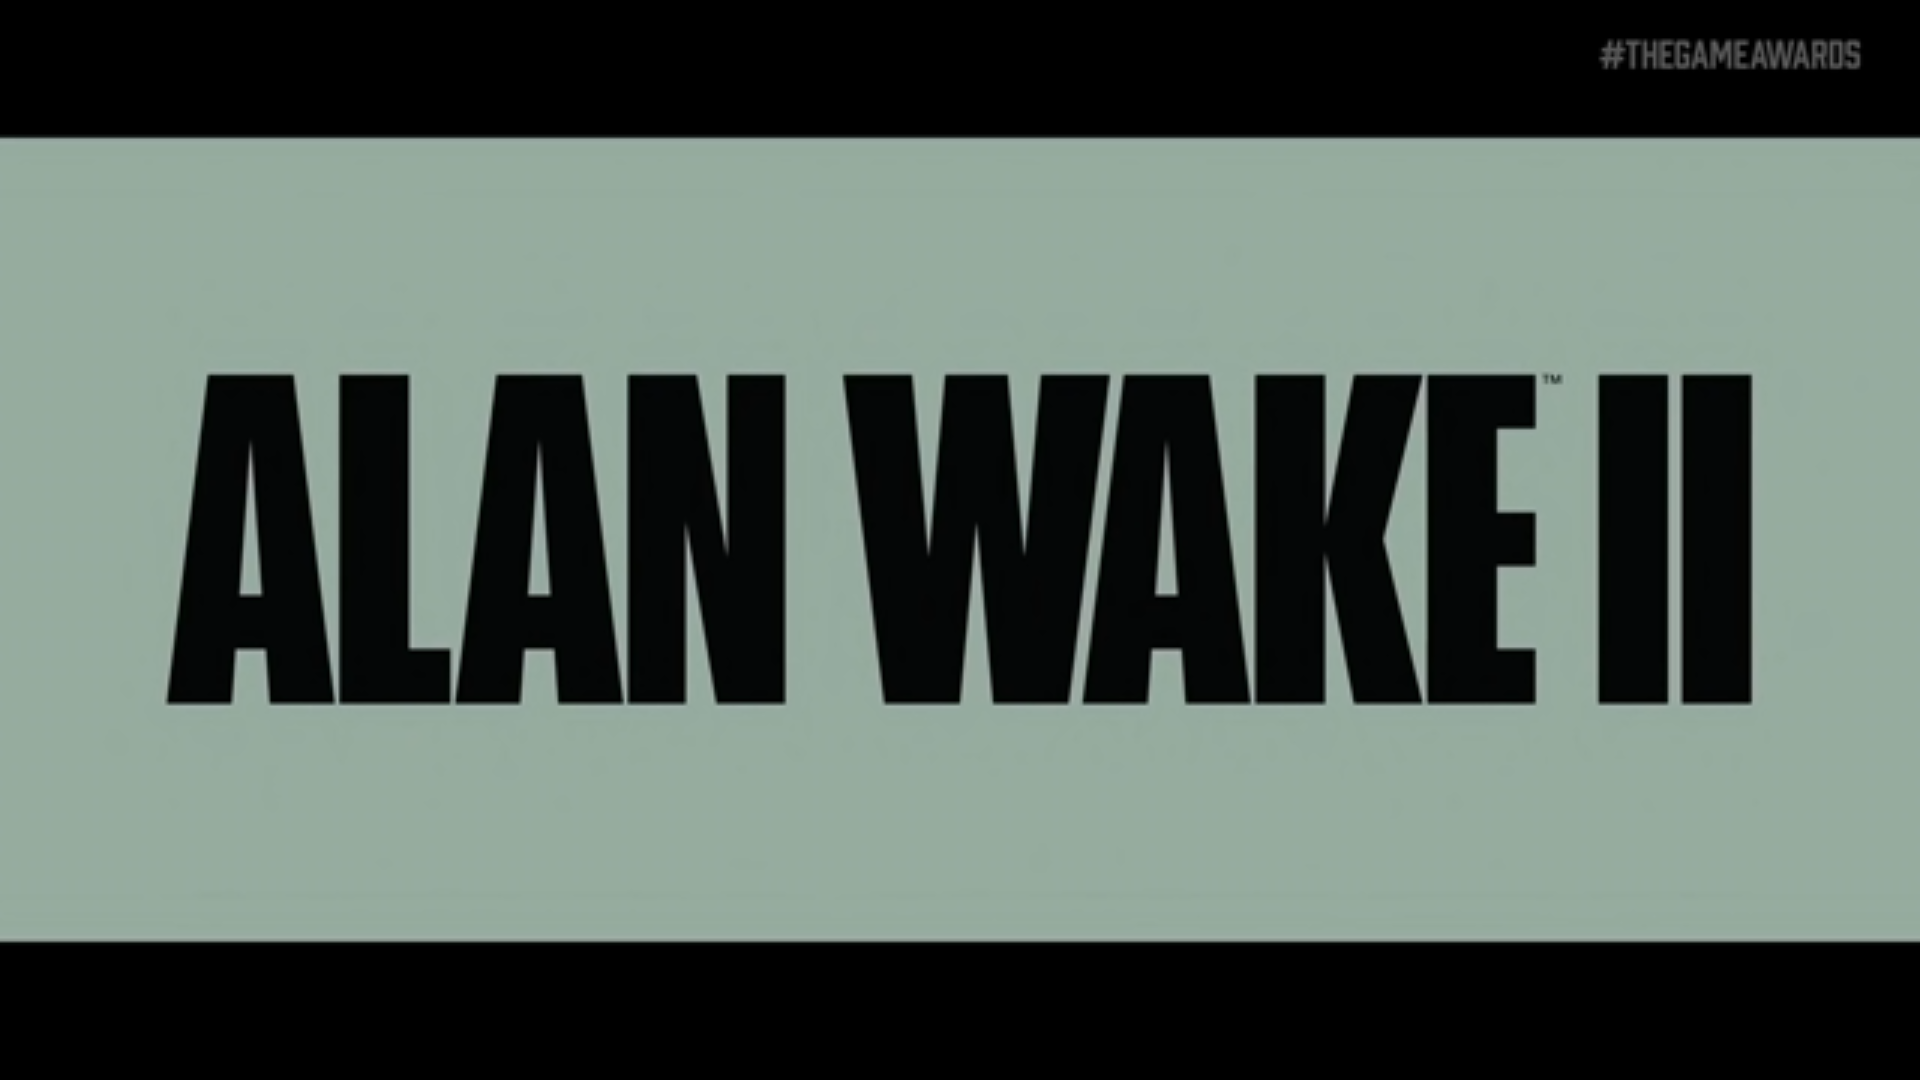 Alan Wake 2 — Launch Trailer 